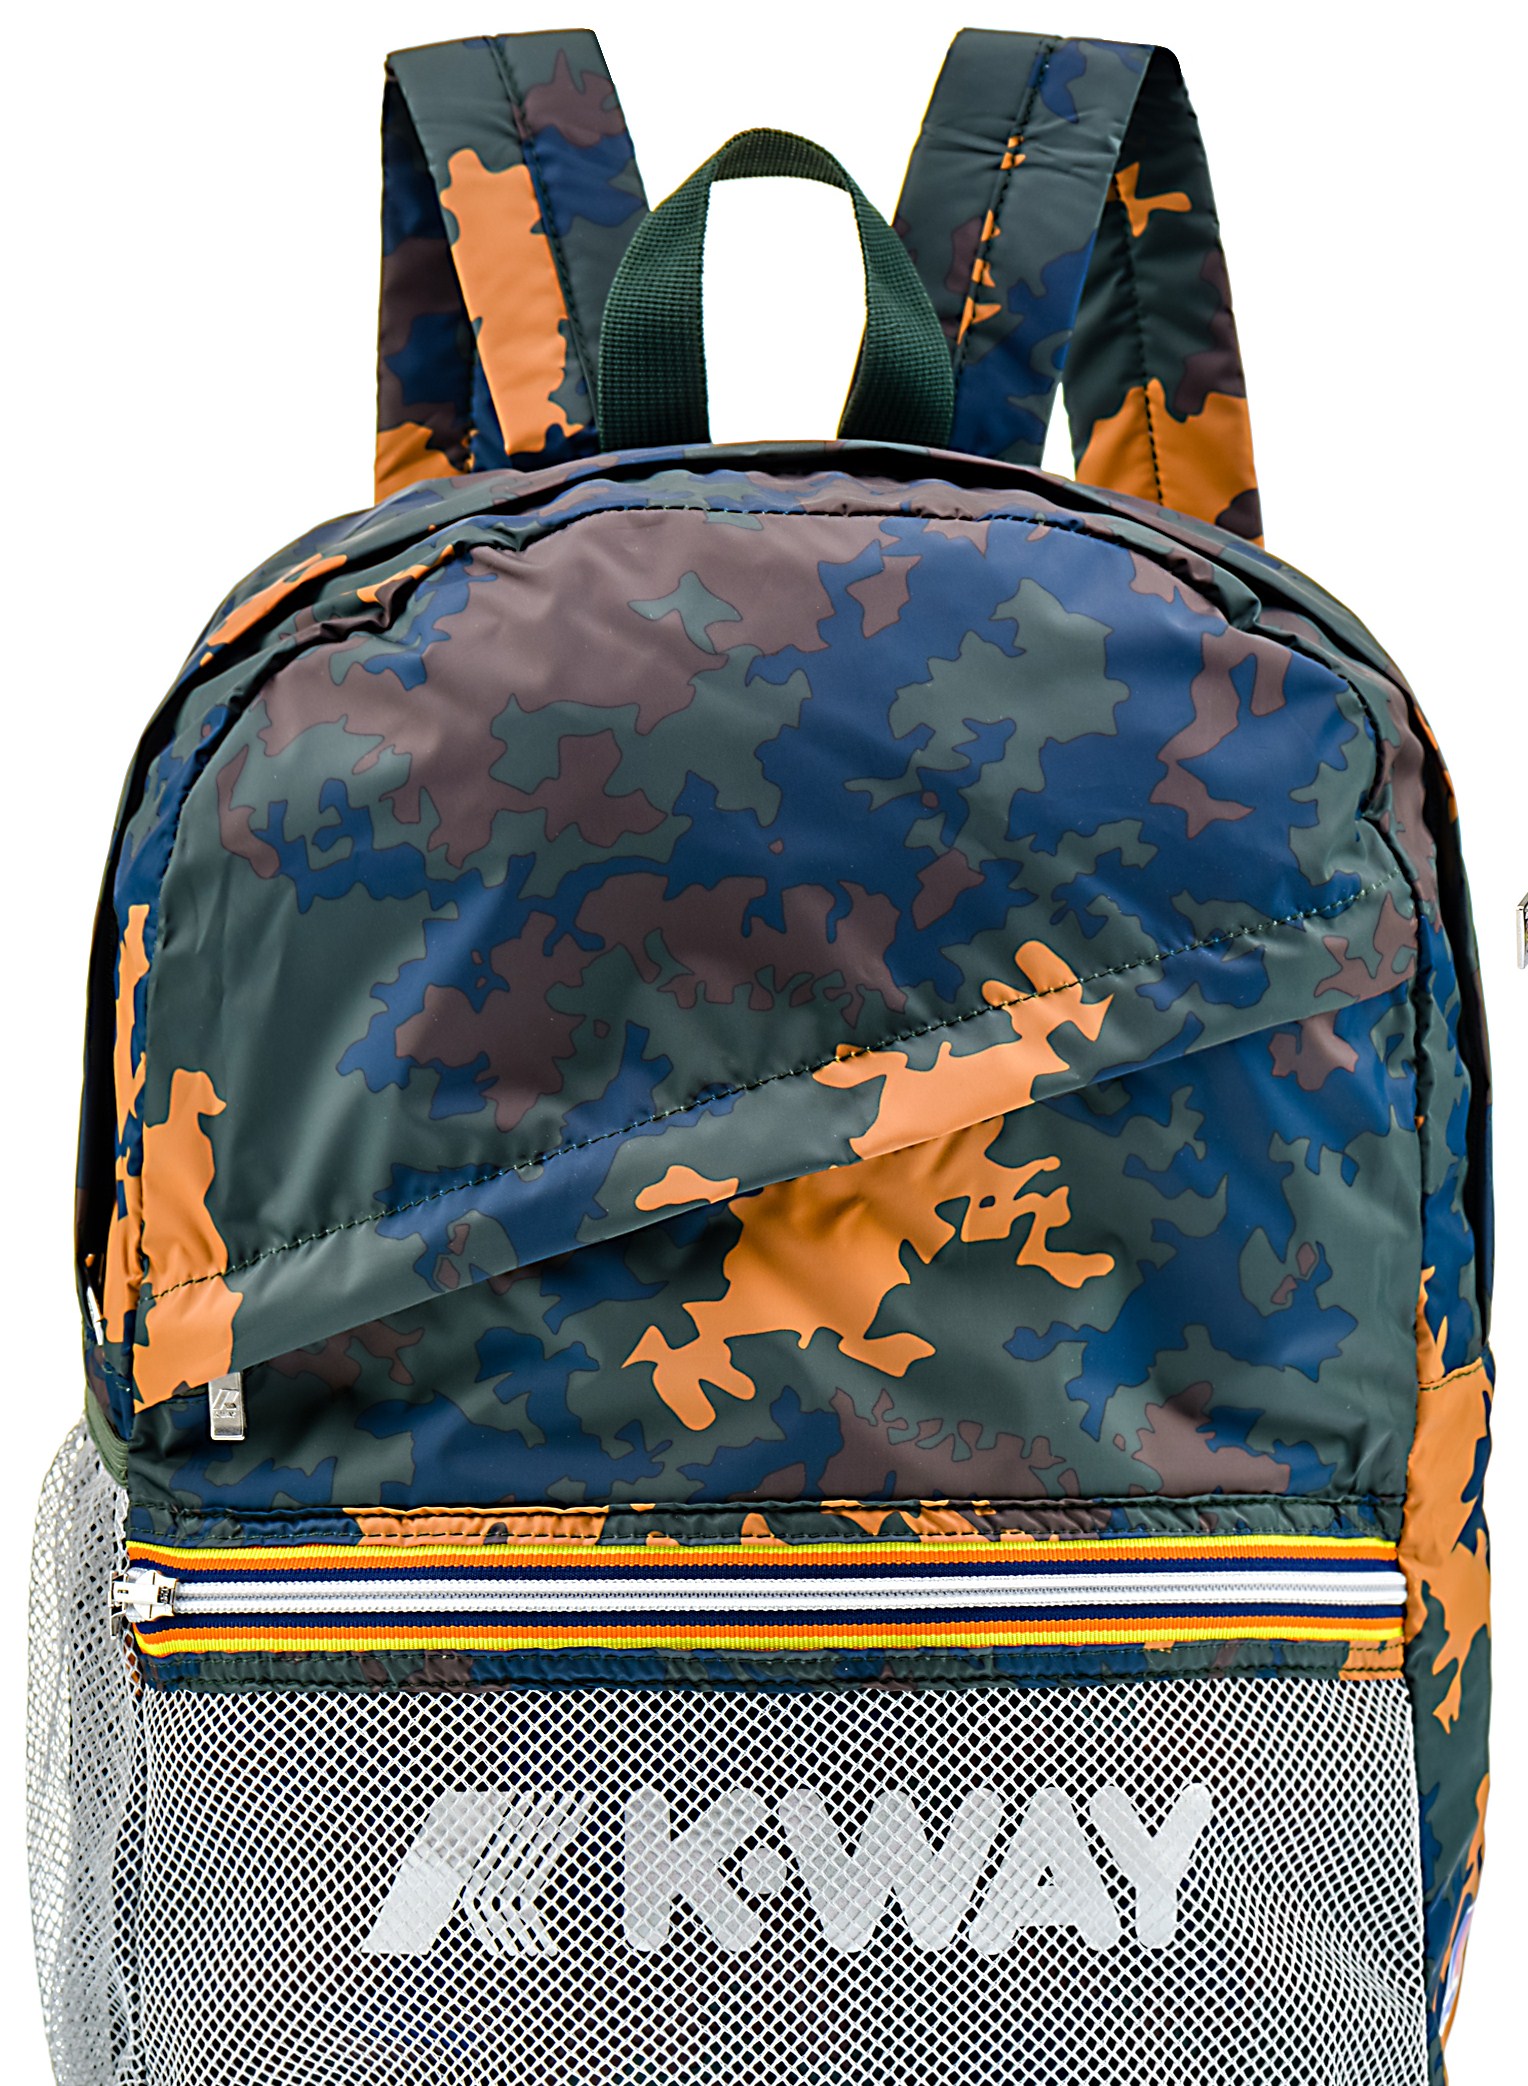 11 kway backpack